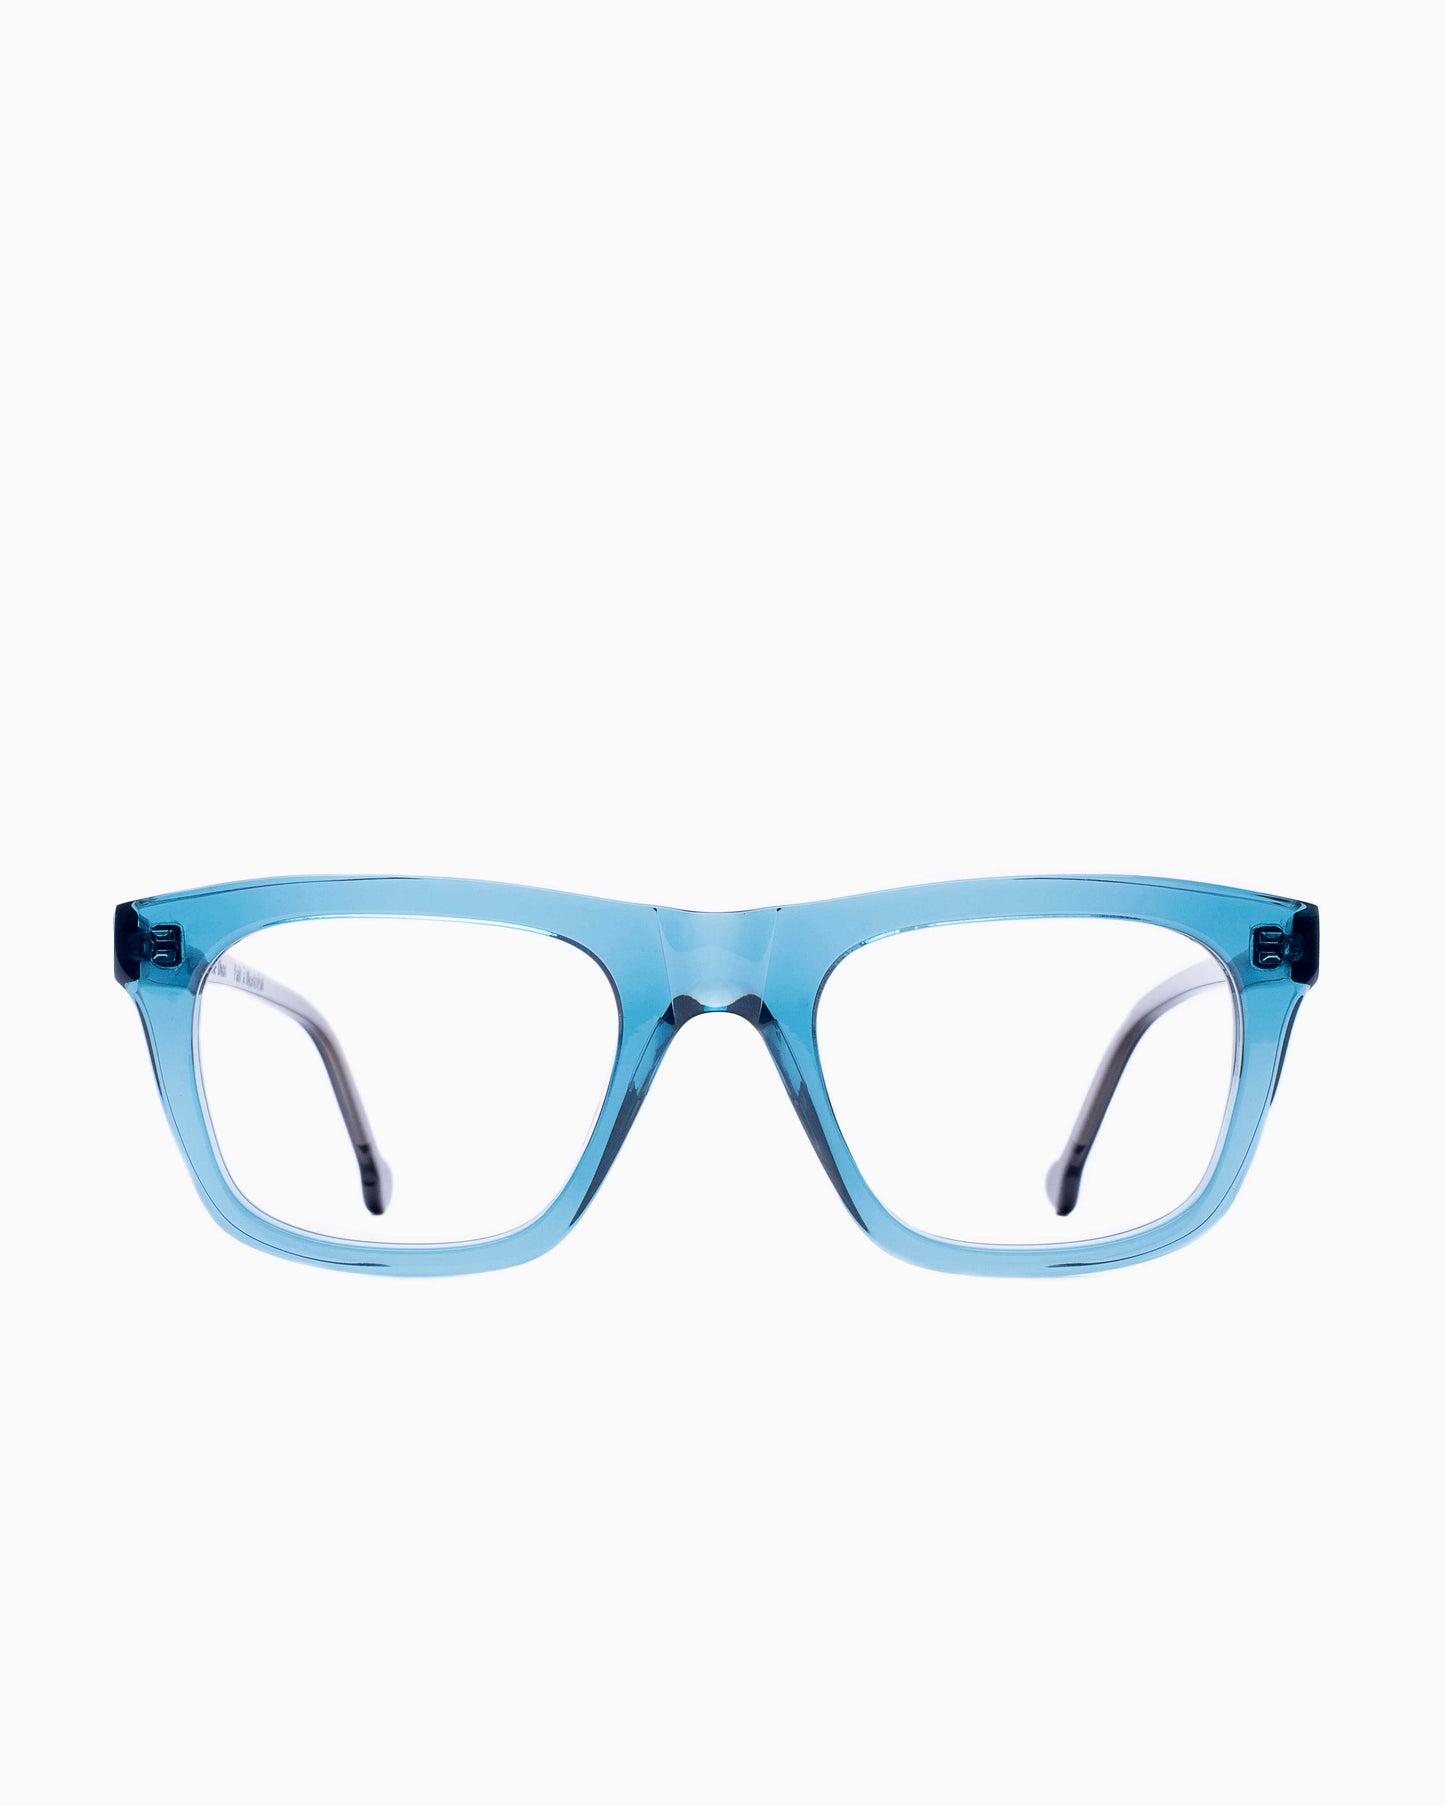 Marie-Sophie Dion - Hemingway - Blu | glasses bar